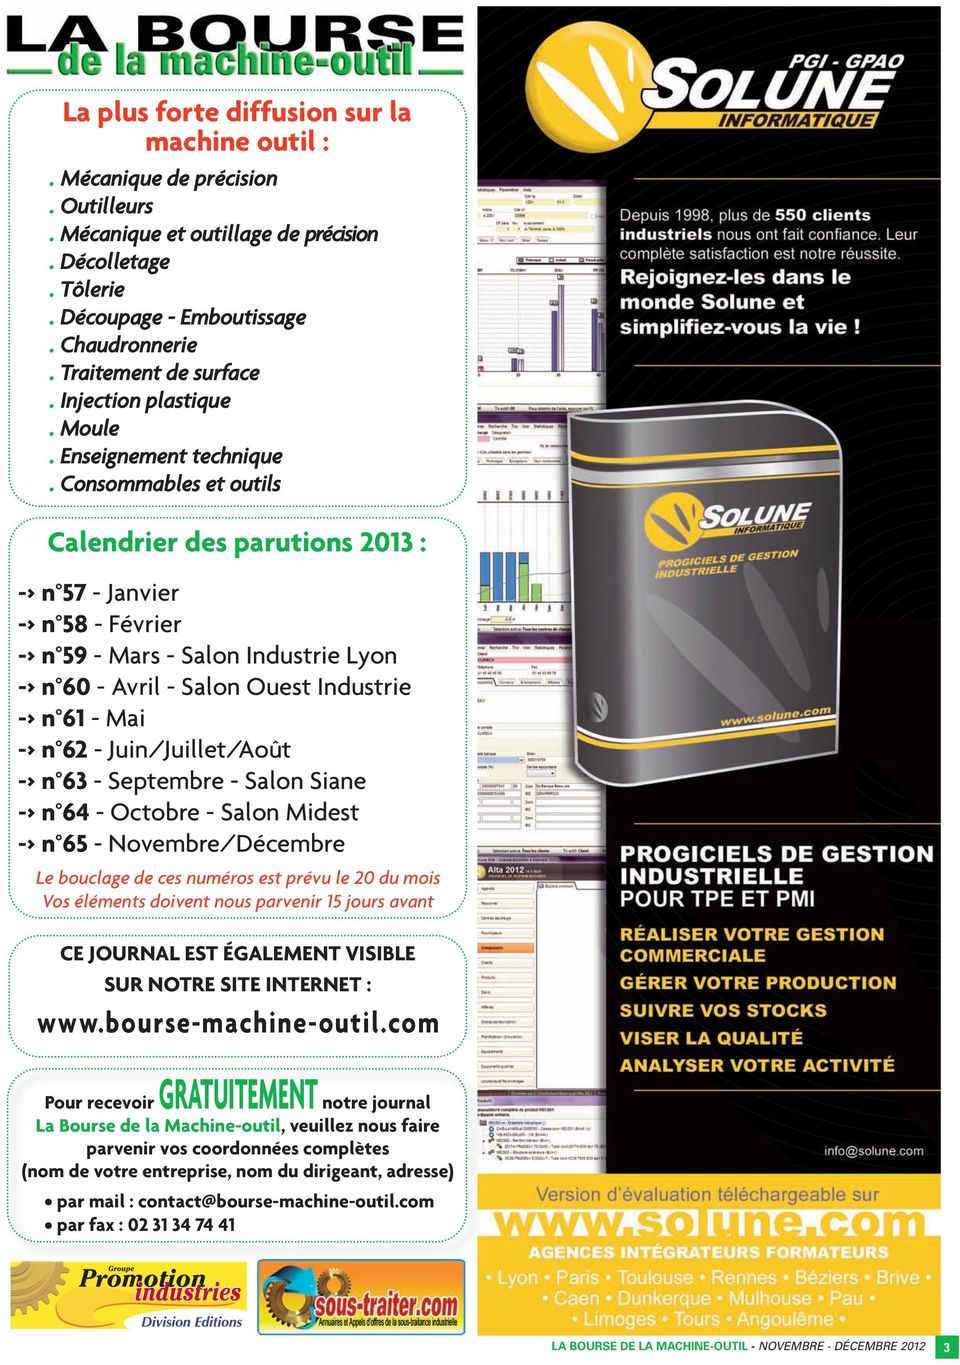 Consommables et outils Calendrier des parutions 2013 : -> n 57 - Janvier -> n 58 - Février -> n 59 - Mars - Salon Industrie Lyon -> n 60 - Avril - Salon Ouest Industrie -> n 61 - Mai -> n 62 -